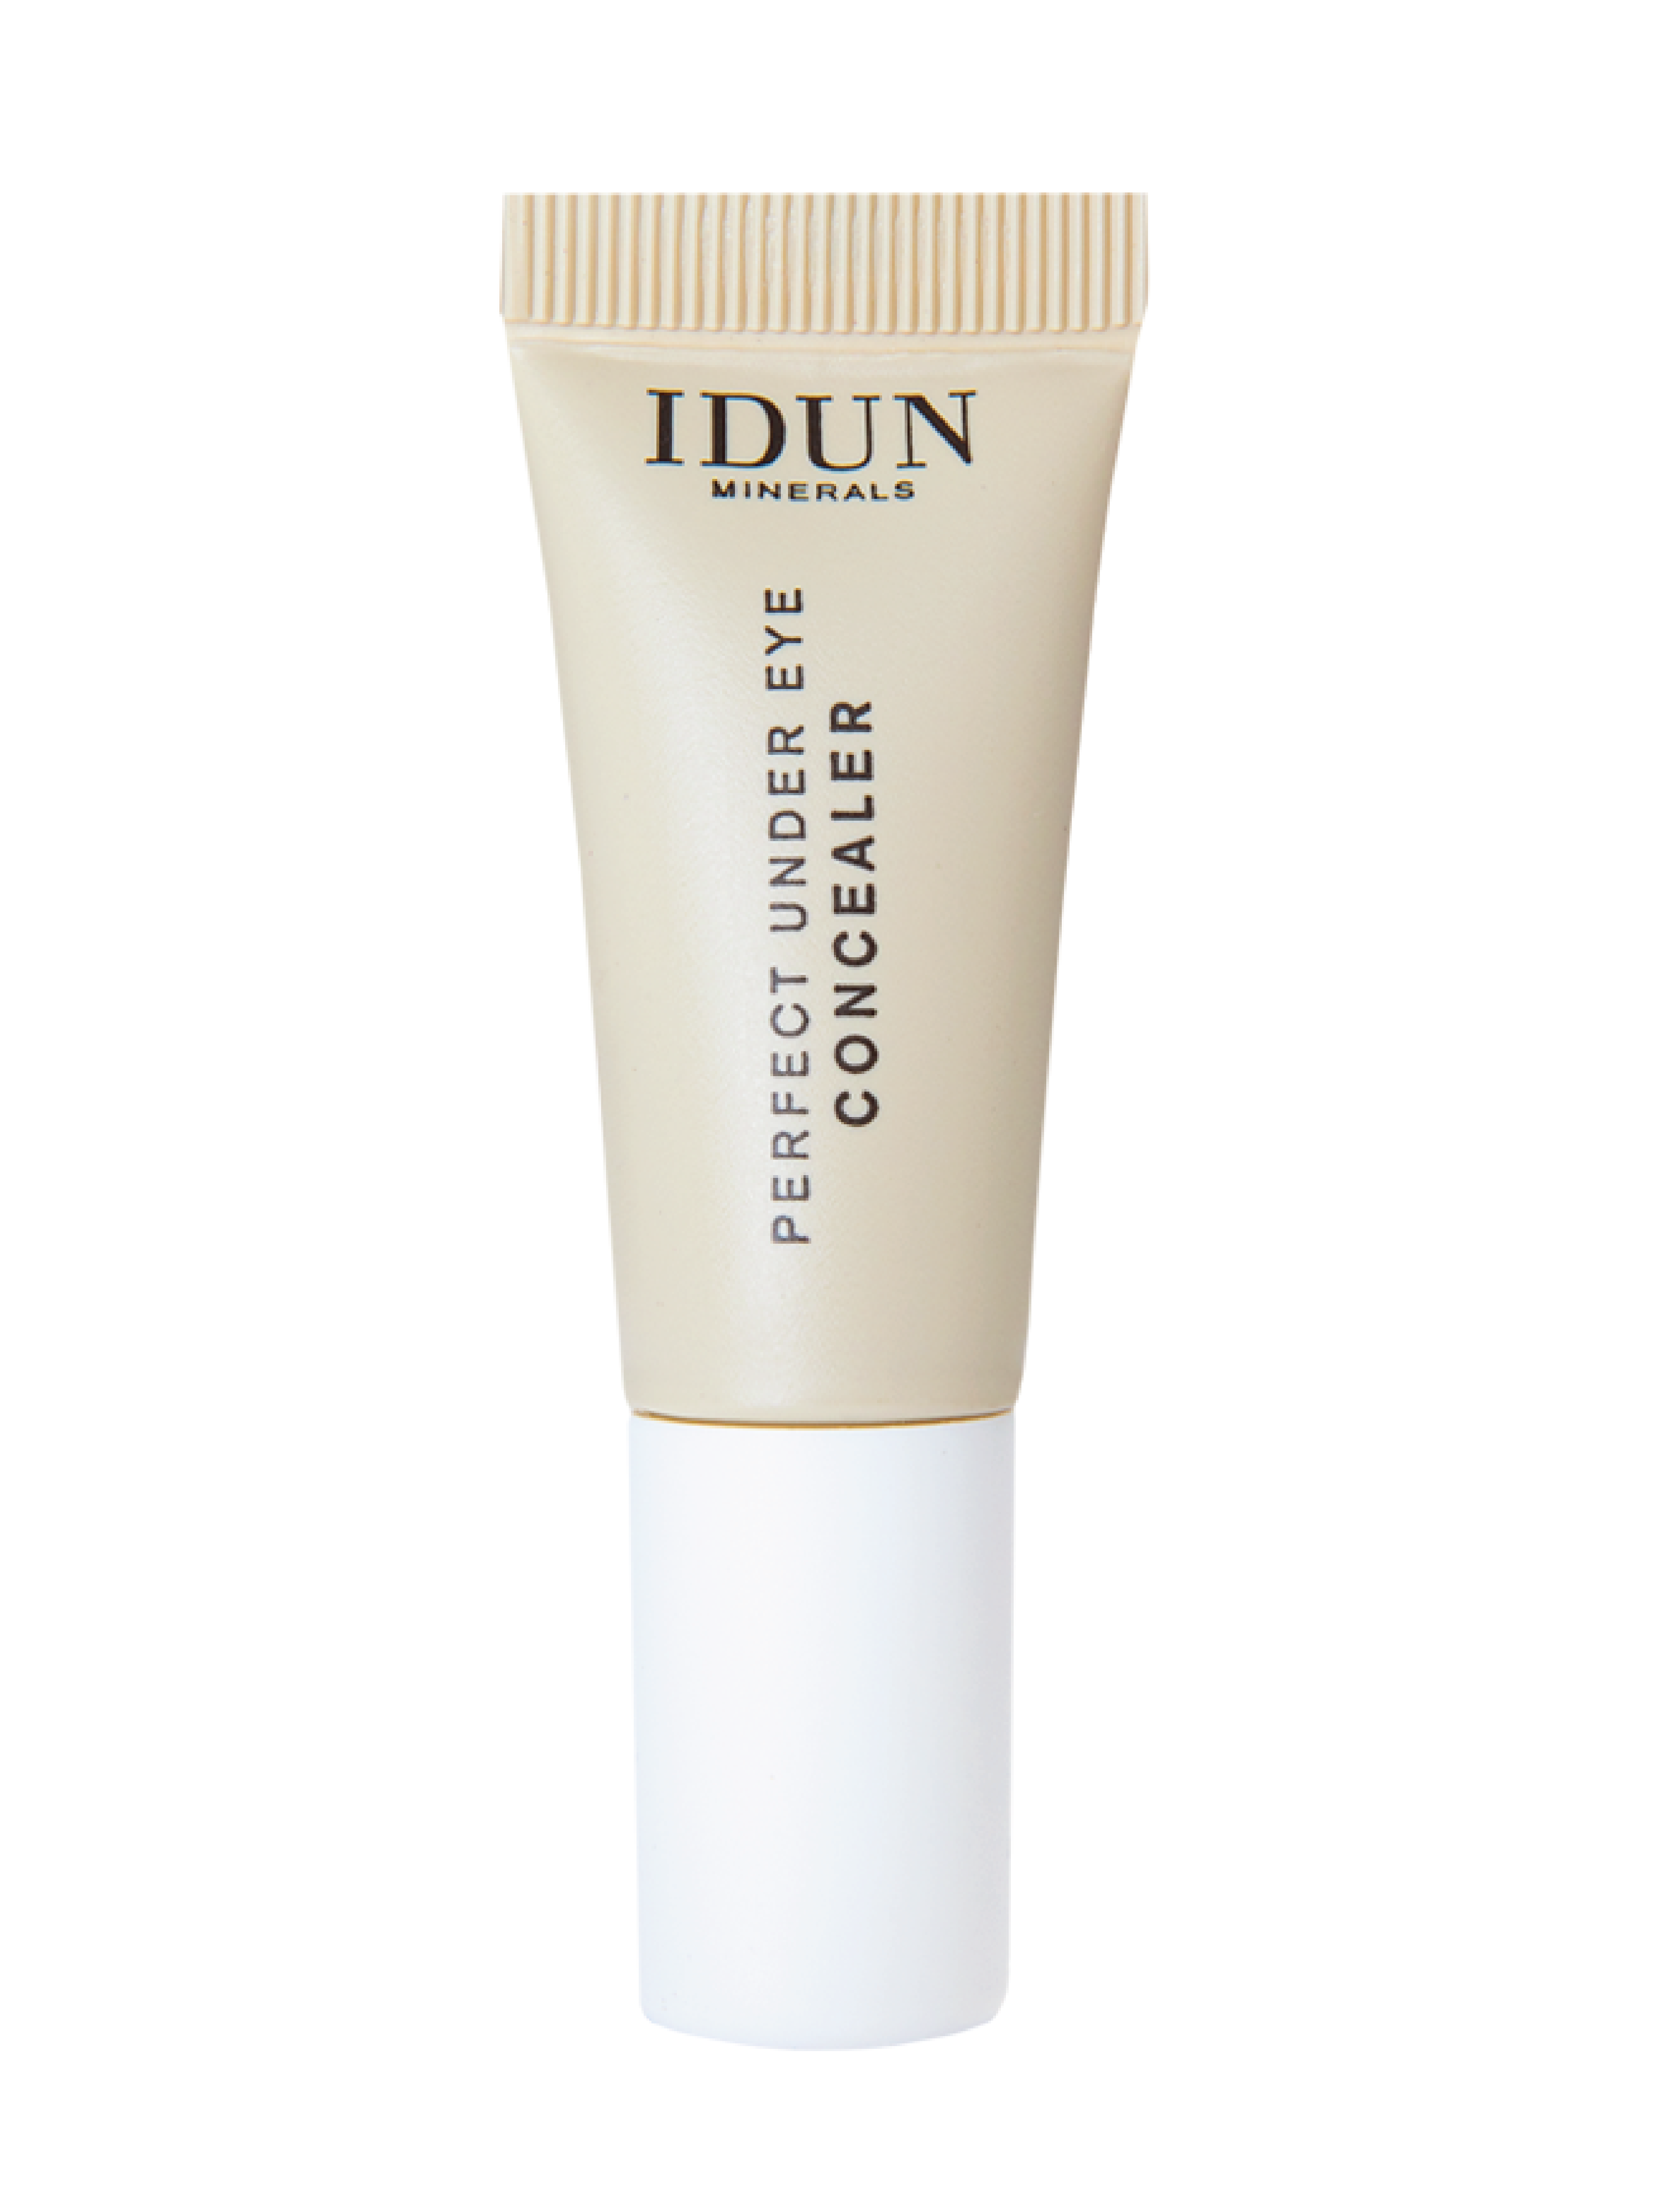 IDUN Minerals Perfect Under Eye Concealer, Medium. 6 ml